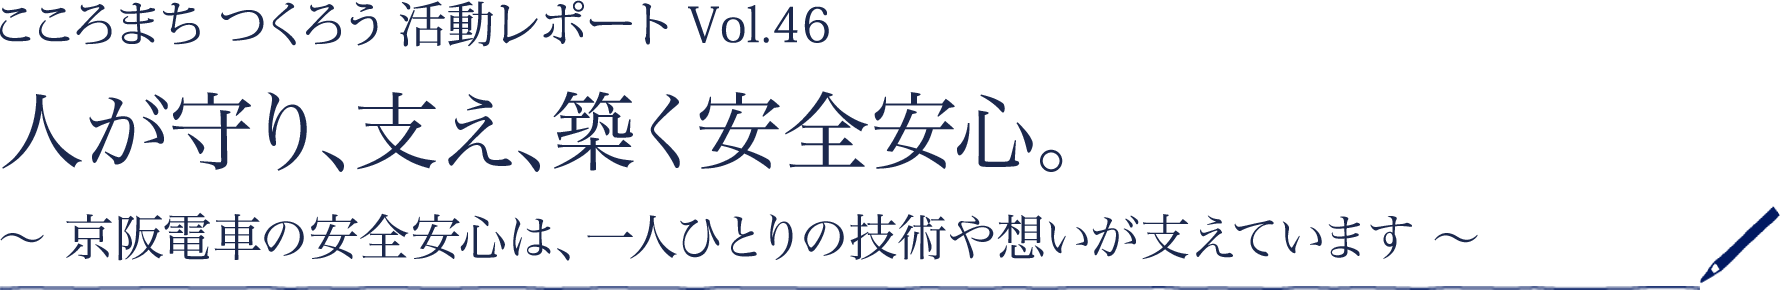 ［こころまちつくろう 活動レポート Vol.46］人が守り、支え、築く安全安心。 ～京阪電車の安全安心は、一人ひとりの技術や想いが支えています～